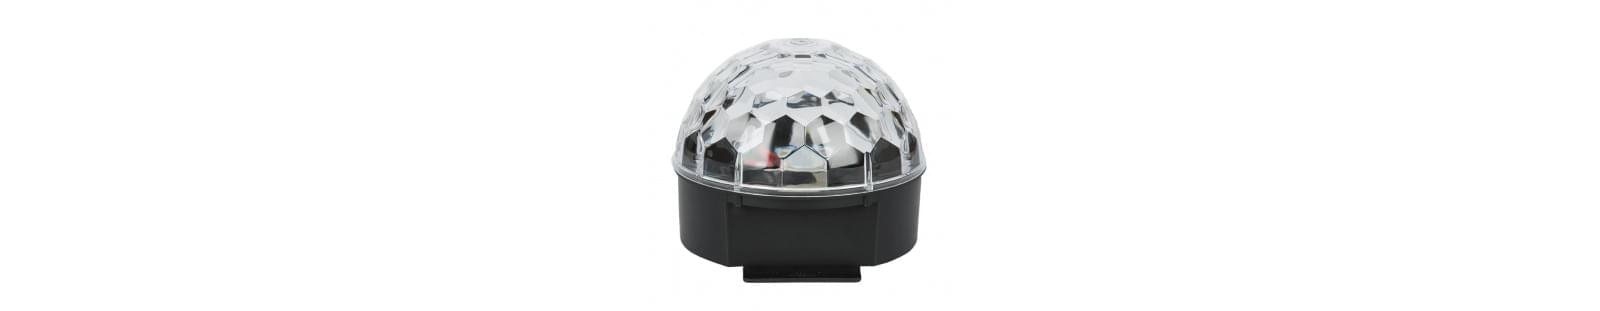 KZ-Mini Crystal Ball